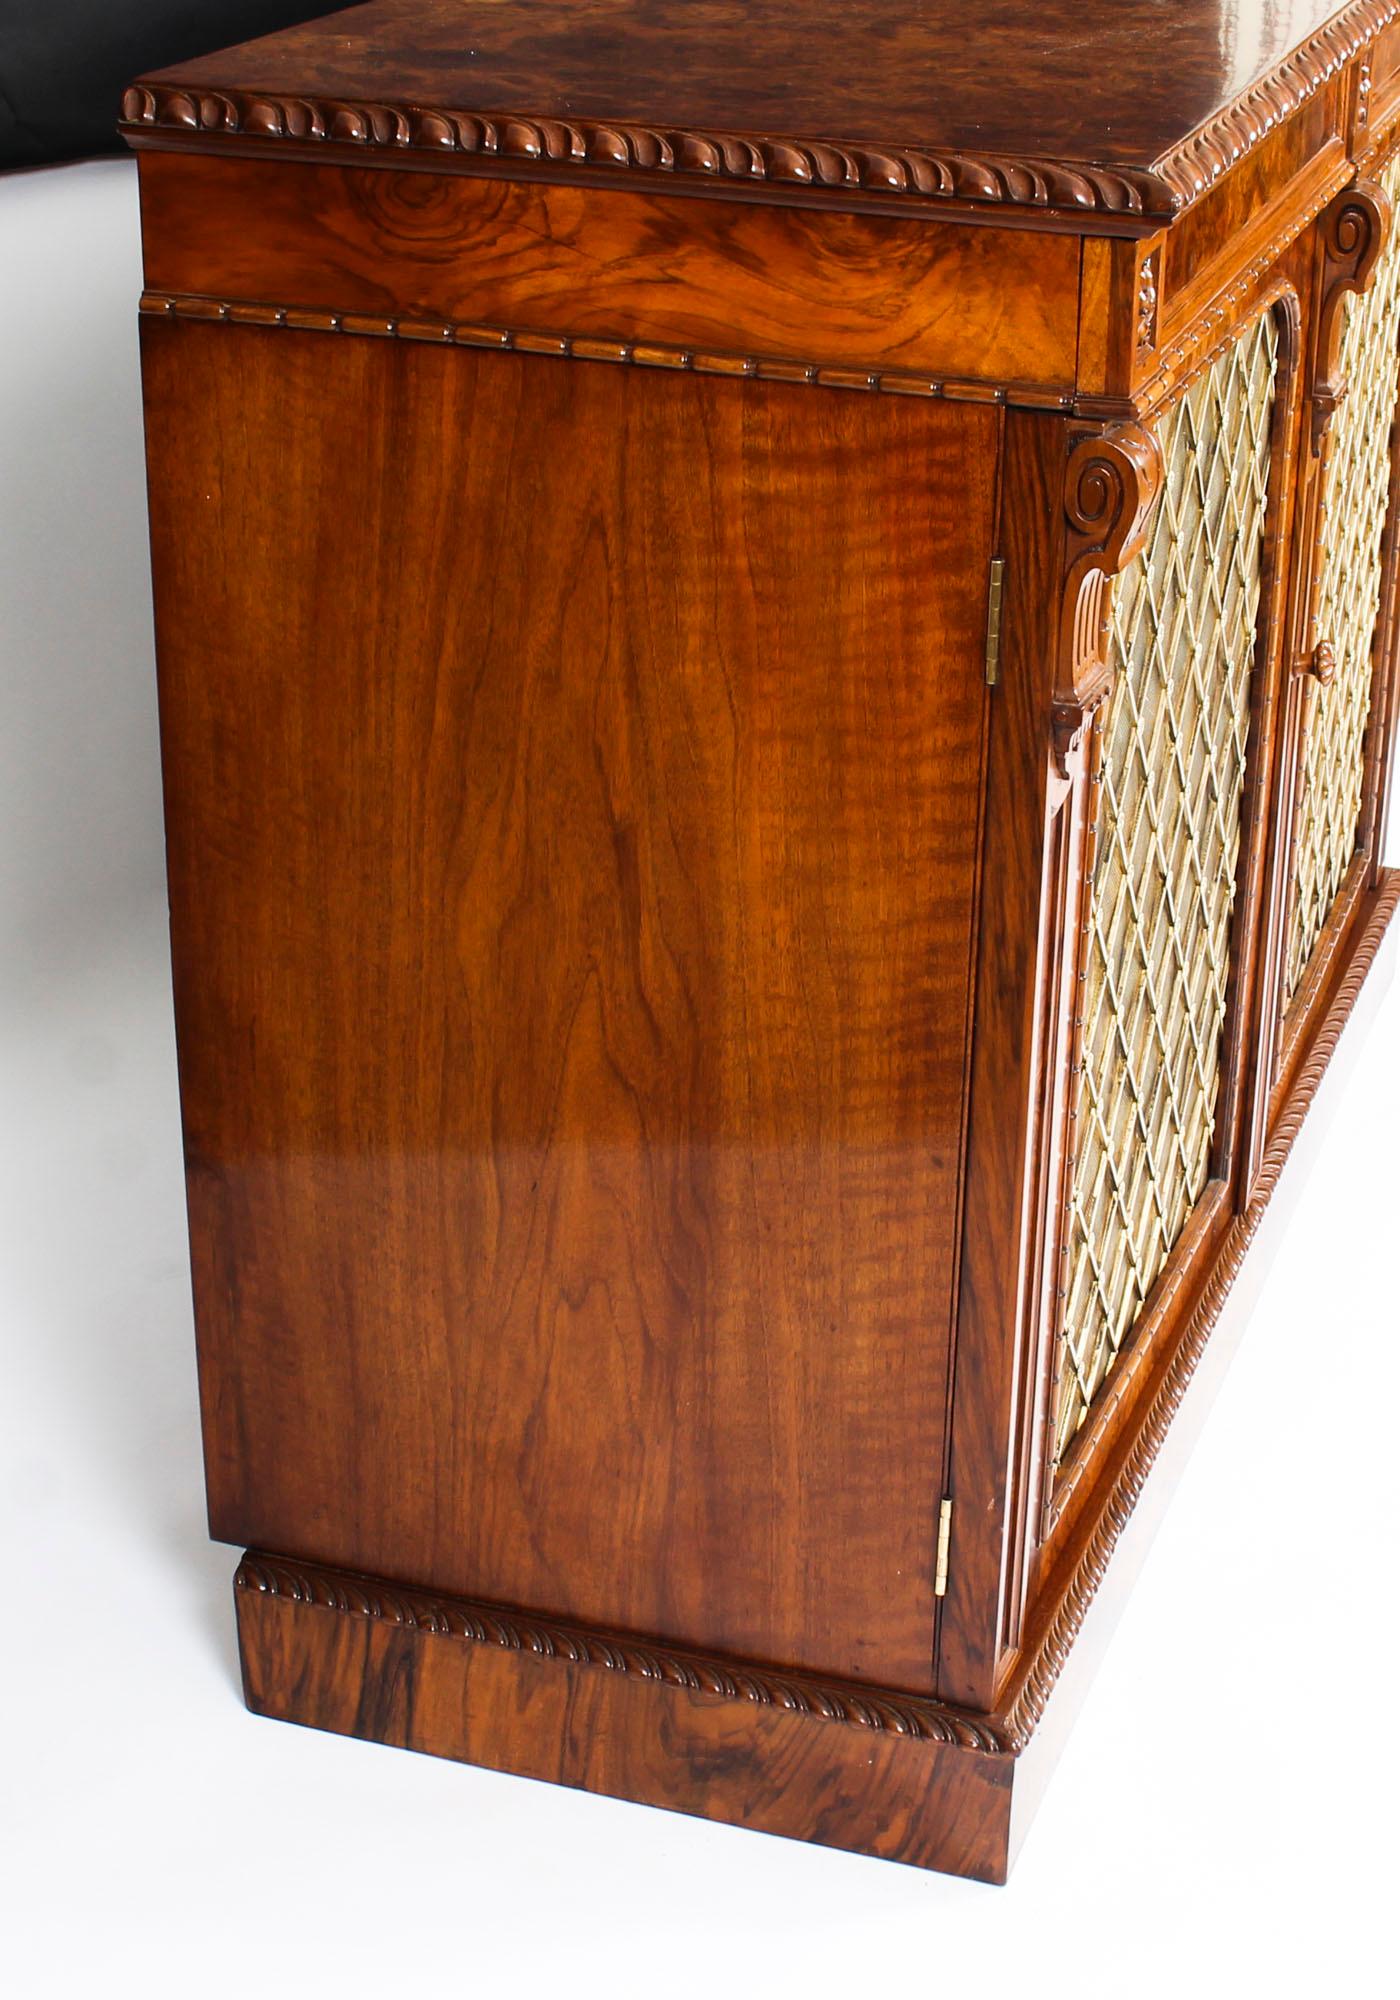 Antique William IV Burr Walnut Chiffonier Sideboard 19th Century 9